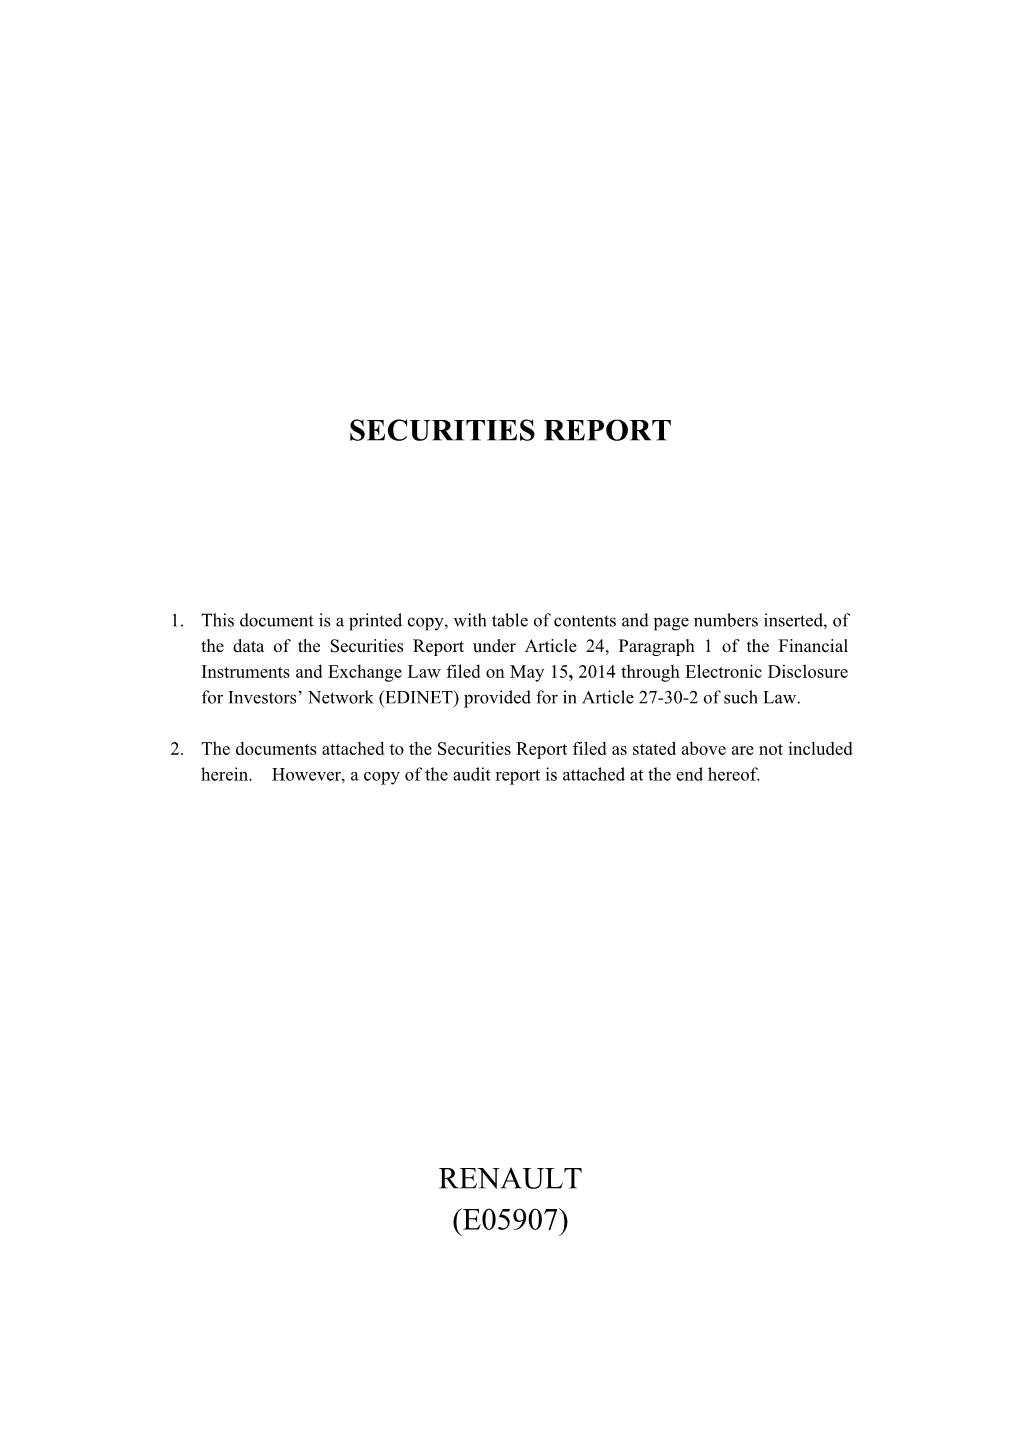 Securities Report Renault